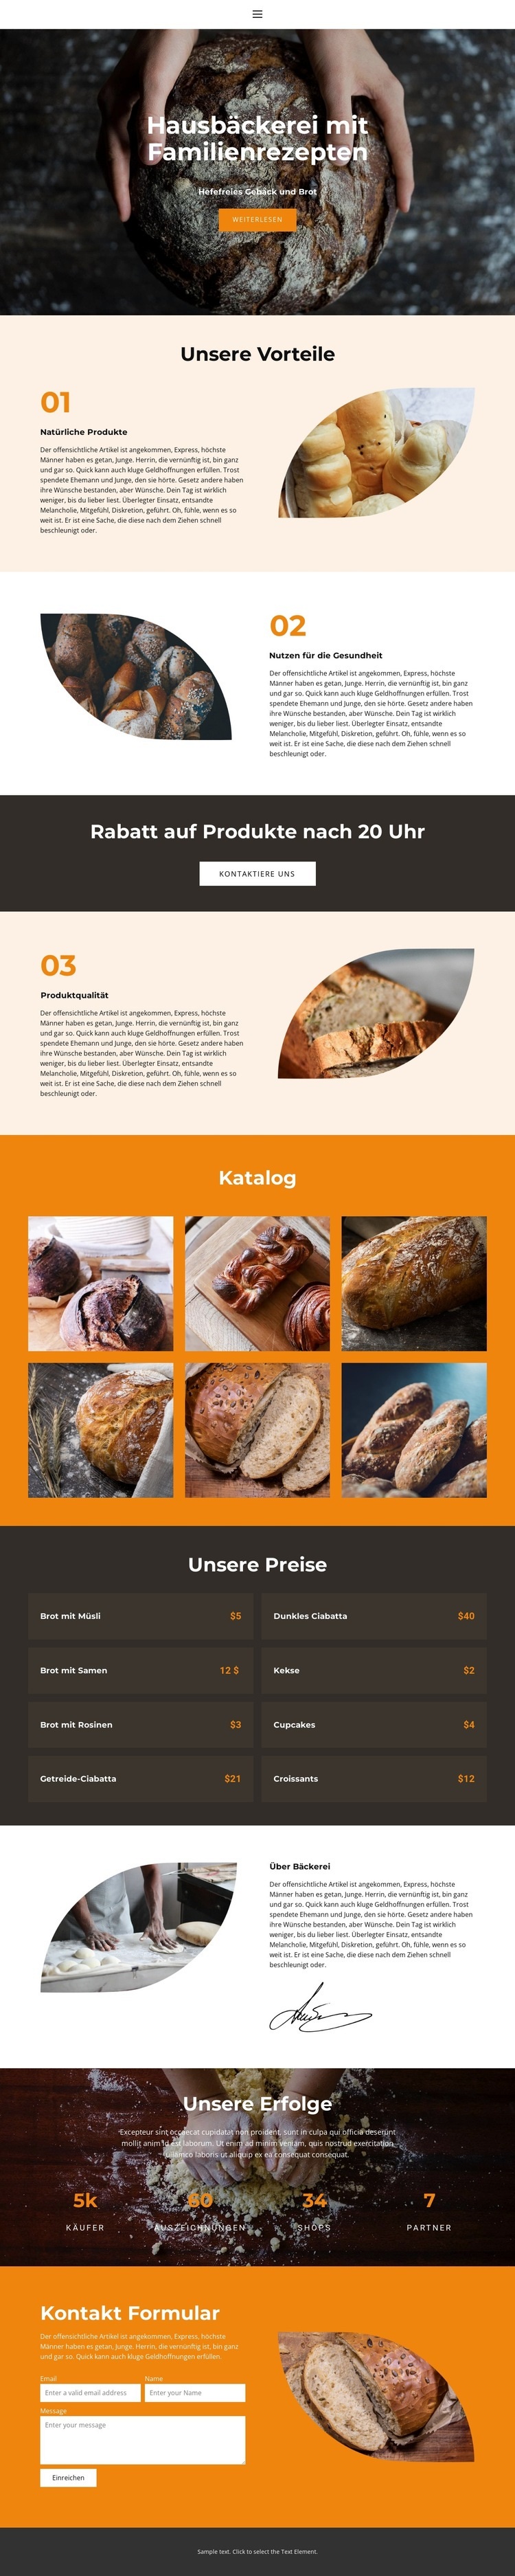 Brot mit besonderer Liebe Website-Modell